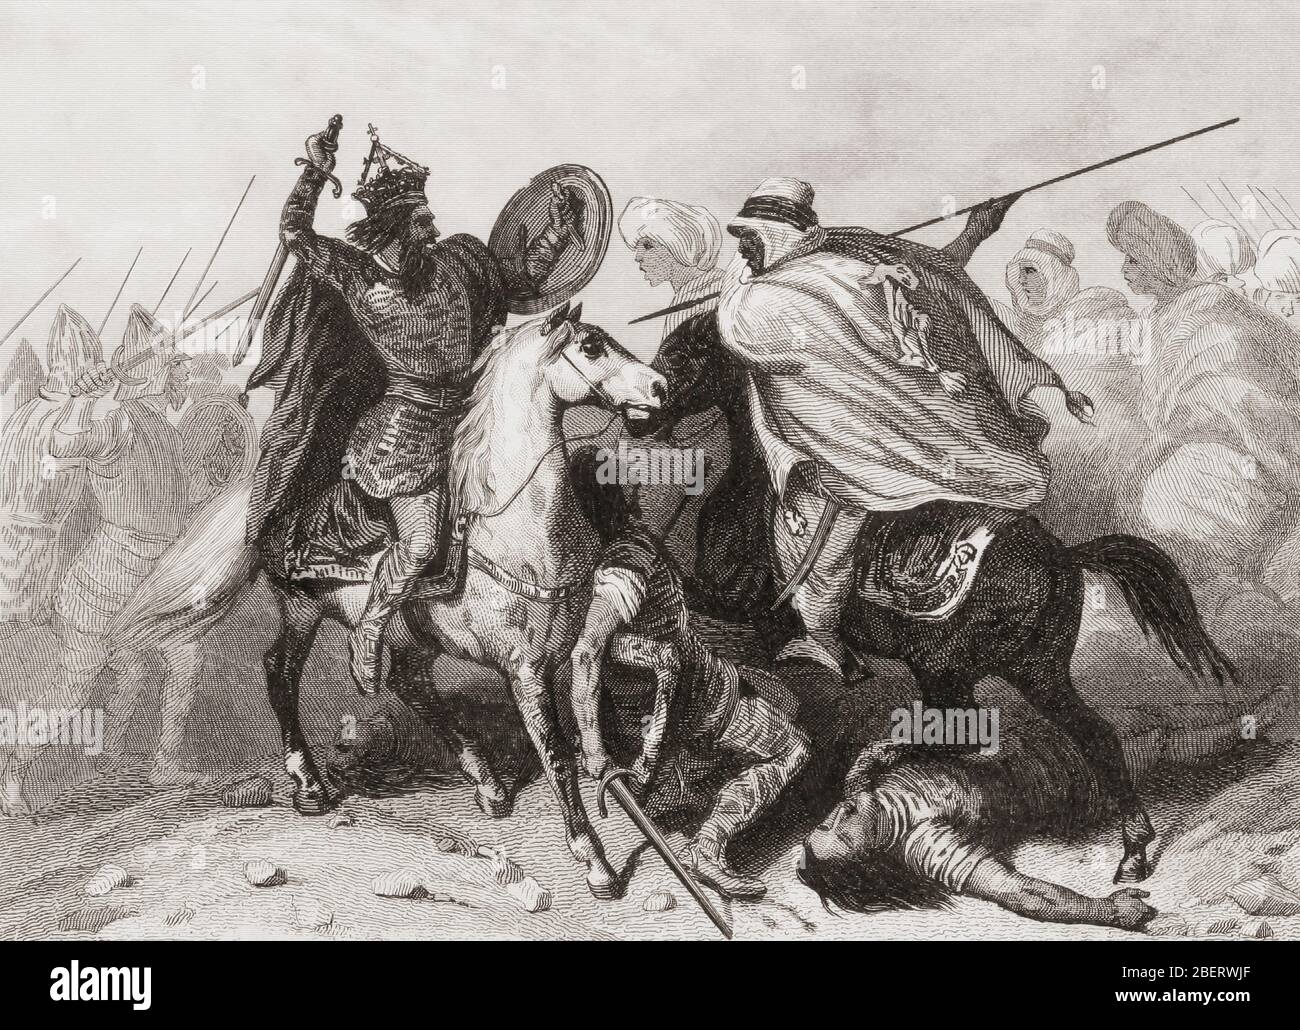 La bataille de Guadalete, 711 AD. Le califat oumayyad musulman a vaincu les Visigoths chrétiens. De Las Glorias Nacionales, publié à Madrid et Barcelone, 1852. L'image montre le roi Roderic qui combat un soldat musulman. Banque D'Images